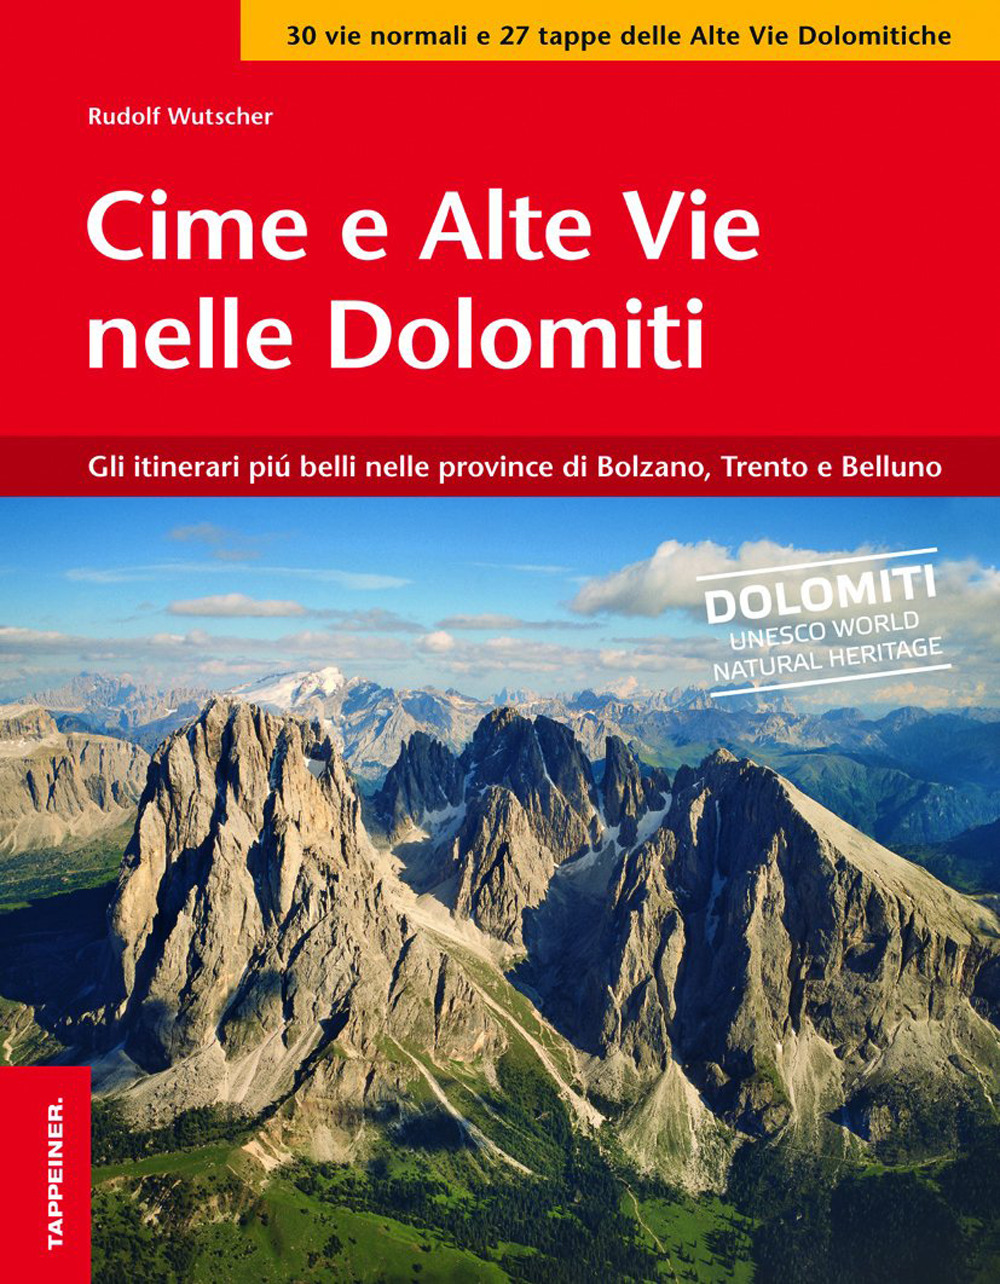 Image of Vie normali delle Dolomiti. Tra Brenta, Dolomiti di Sesto, Fanes e Schiara